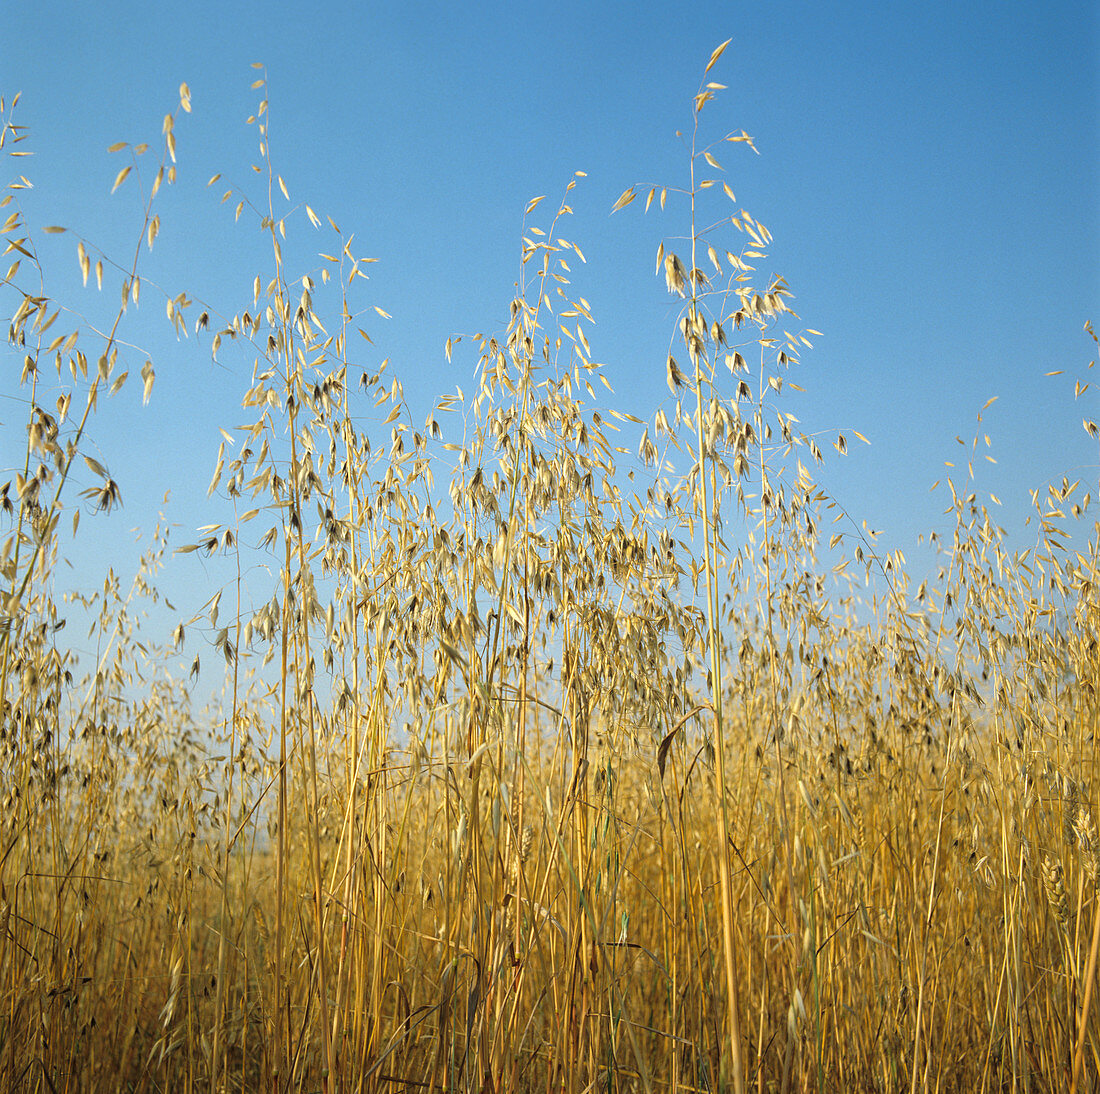 Wild oats in ripe wheat crop